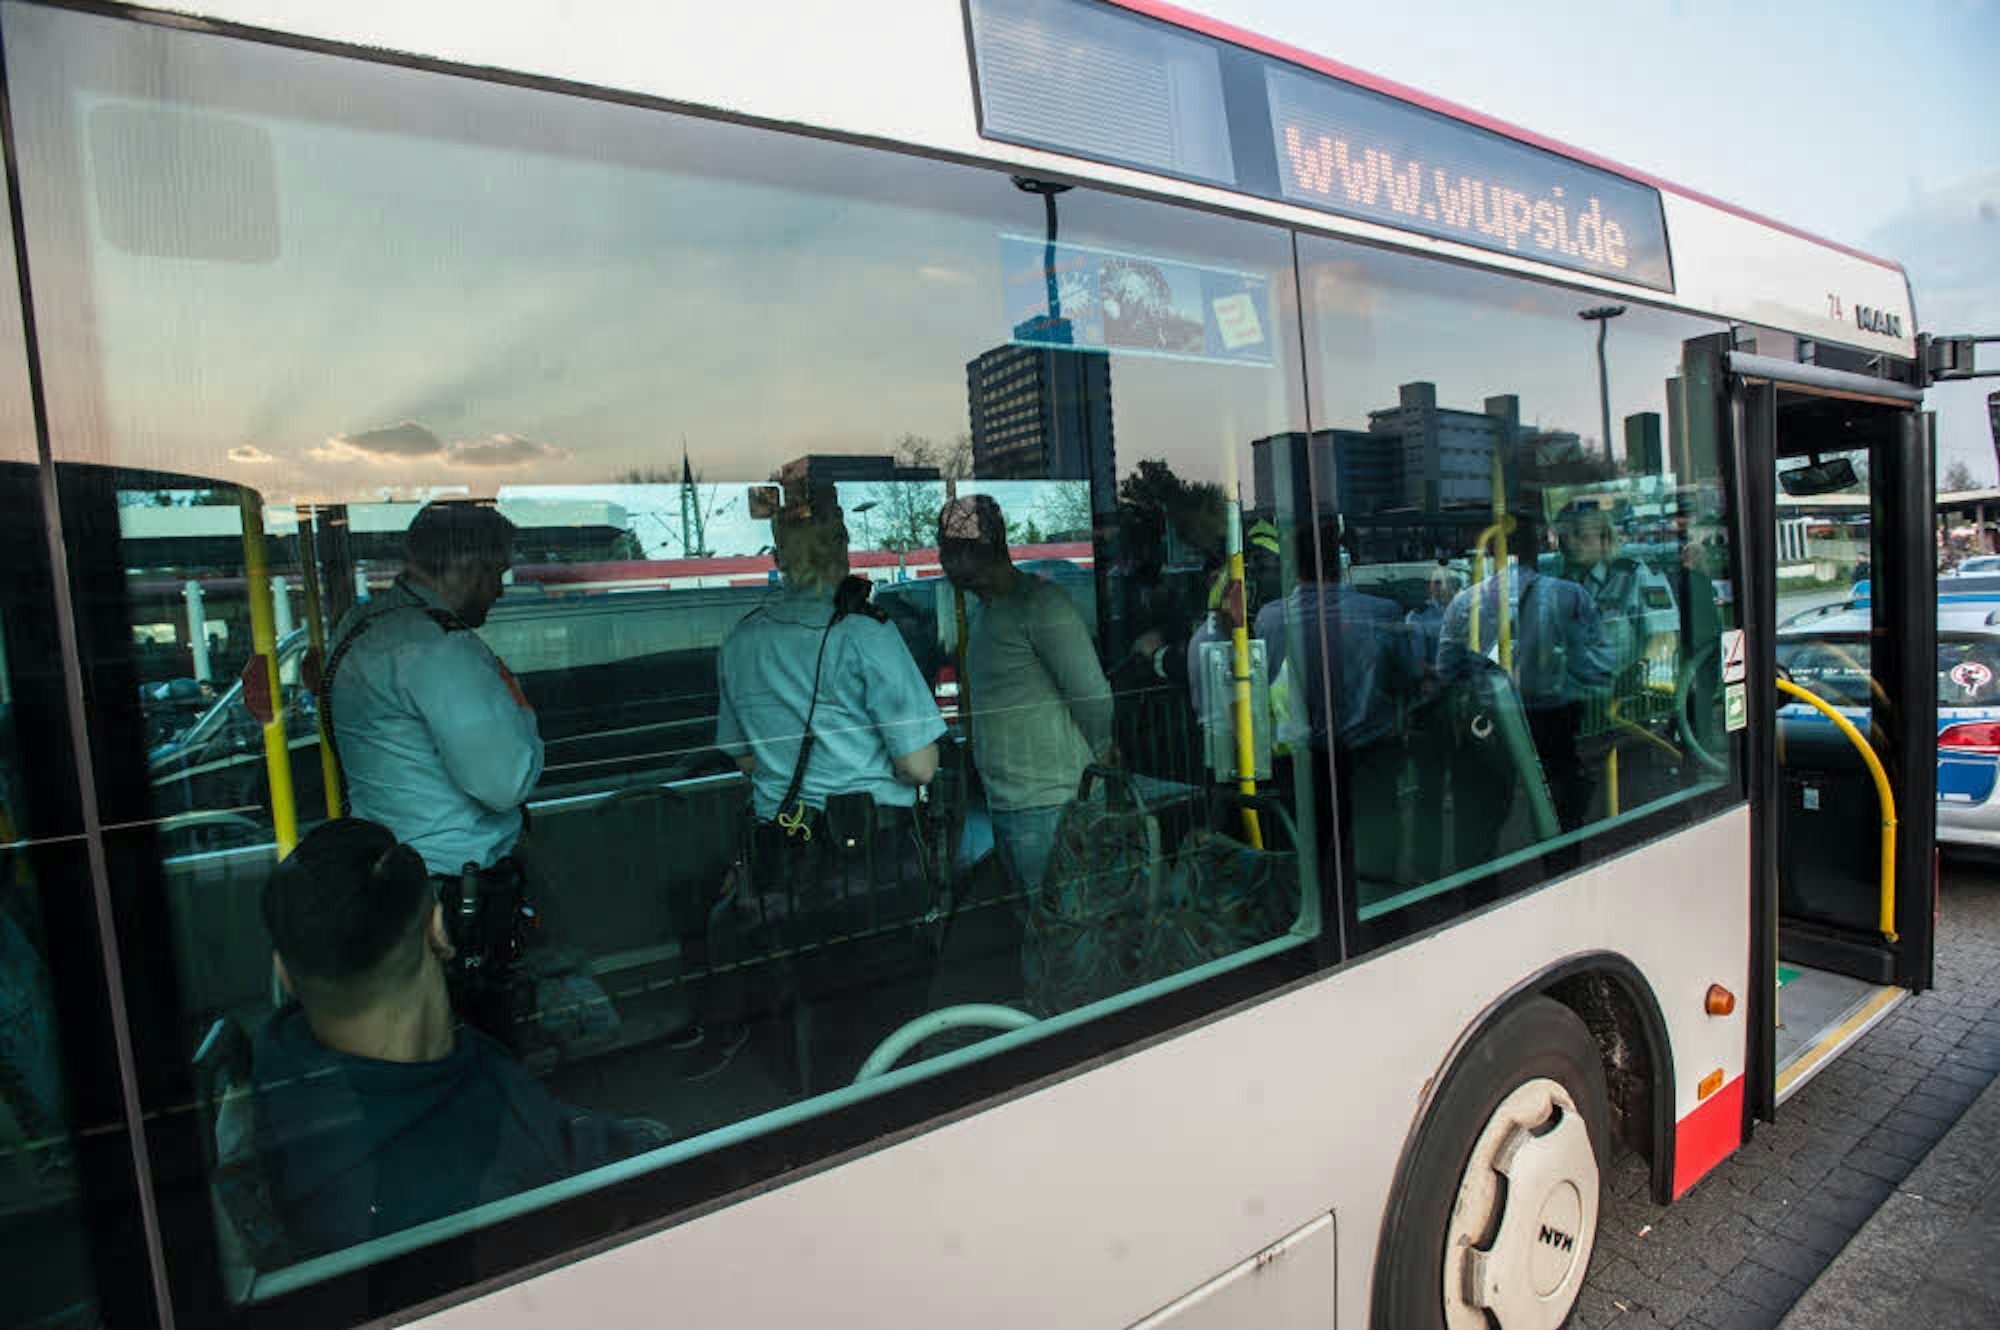 Ein Bus der Wupsi wurde von der Polizei vorübergehend benutzt, um die Festgehaltenen zu untersuchen und Personalien festzustellen.